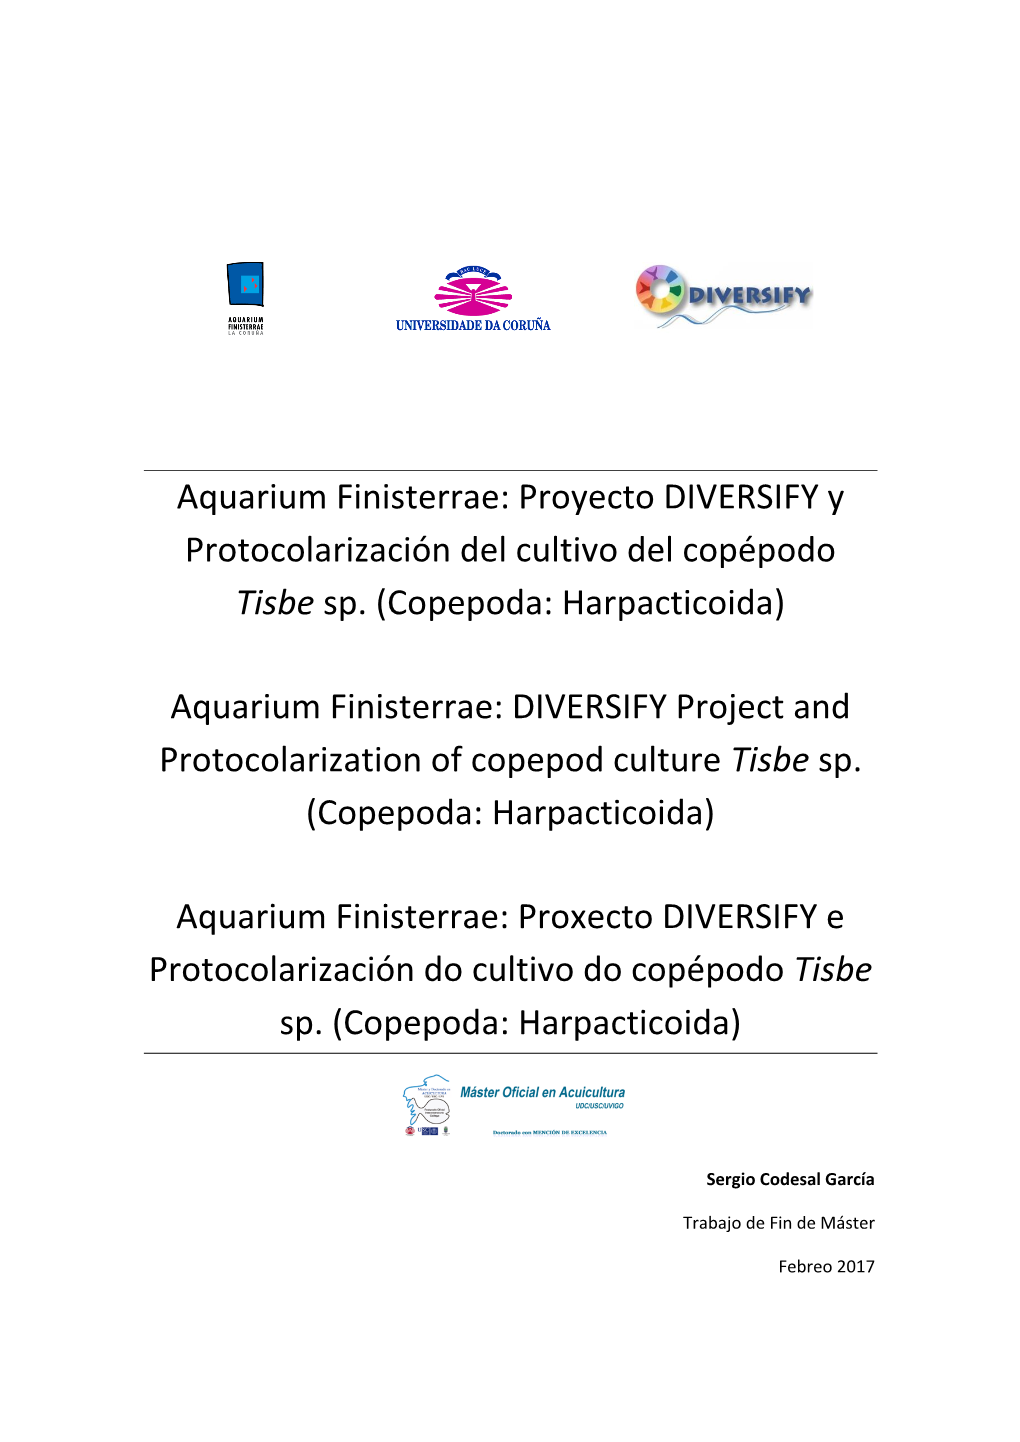 Aquarium Finisterrae: Proyecto DIVERSIFY Y Protocolarización Del Cultivo Del Copépodo "Tisbe Sp." (Copepoda: Harpact